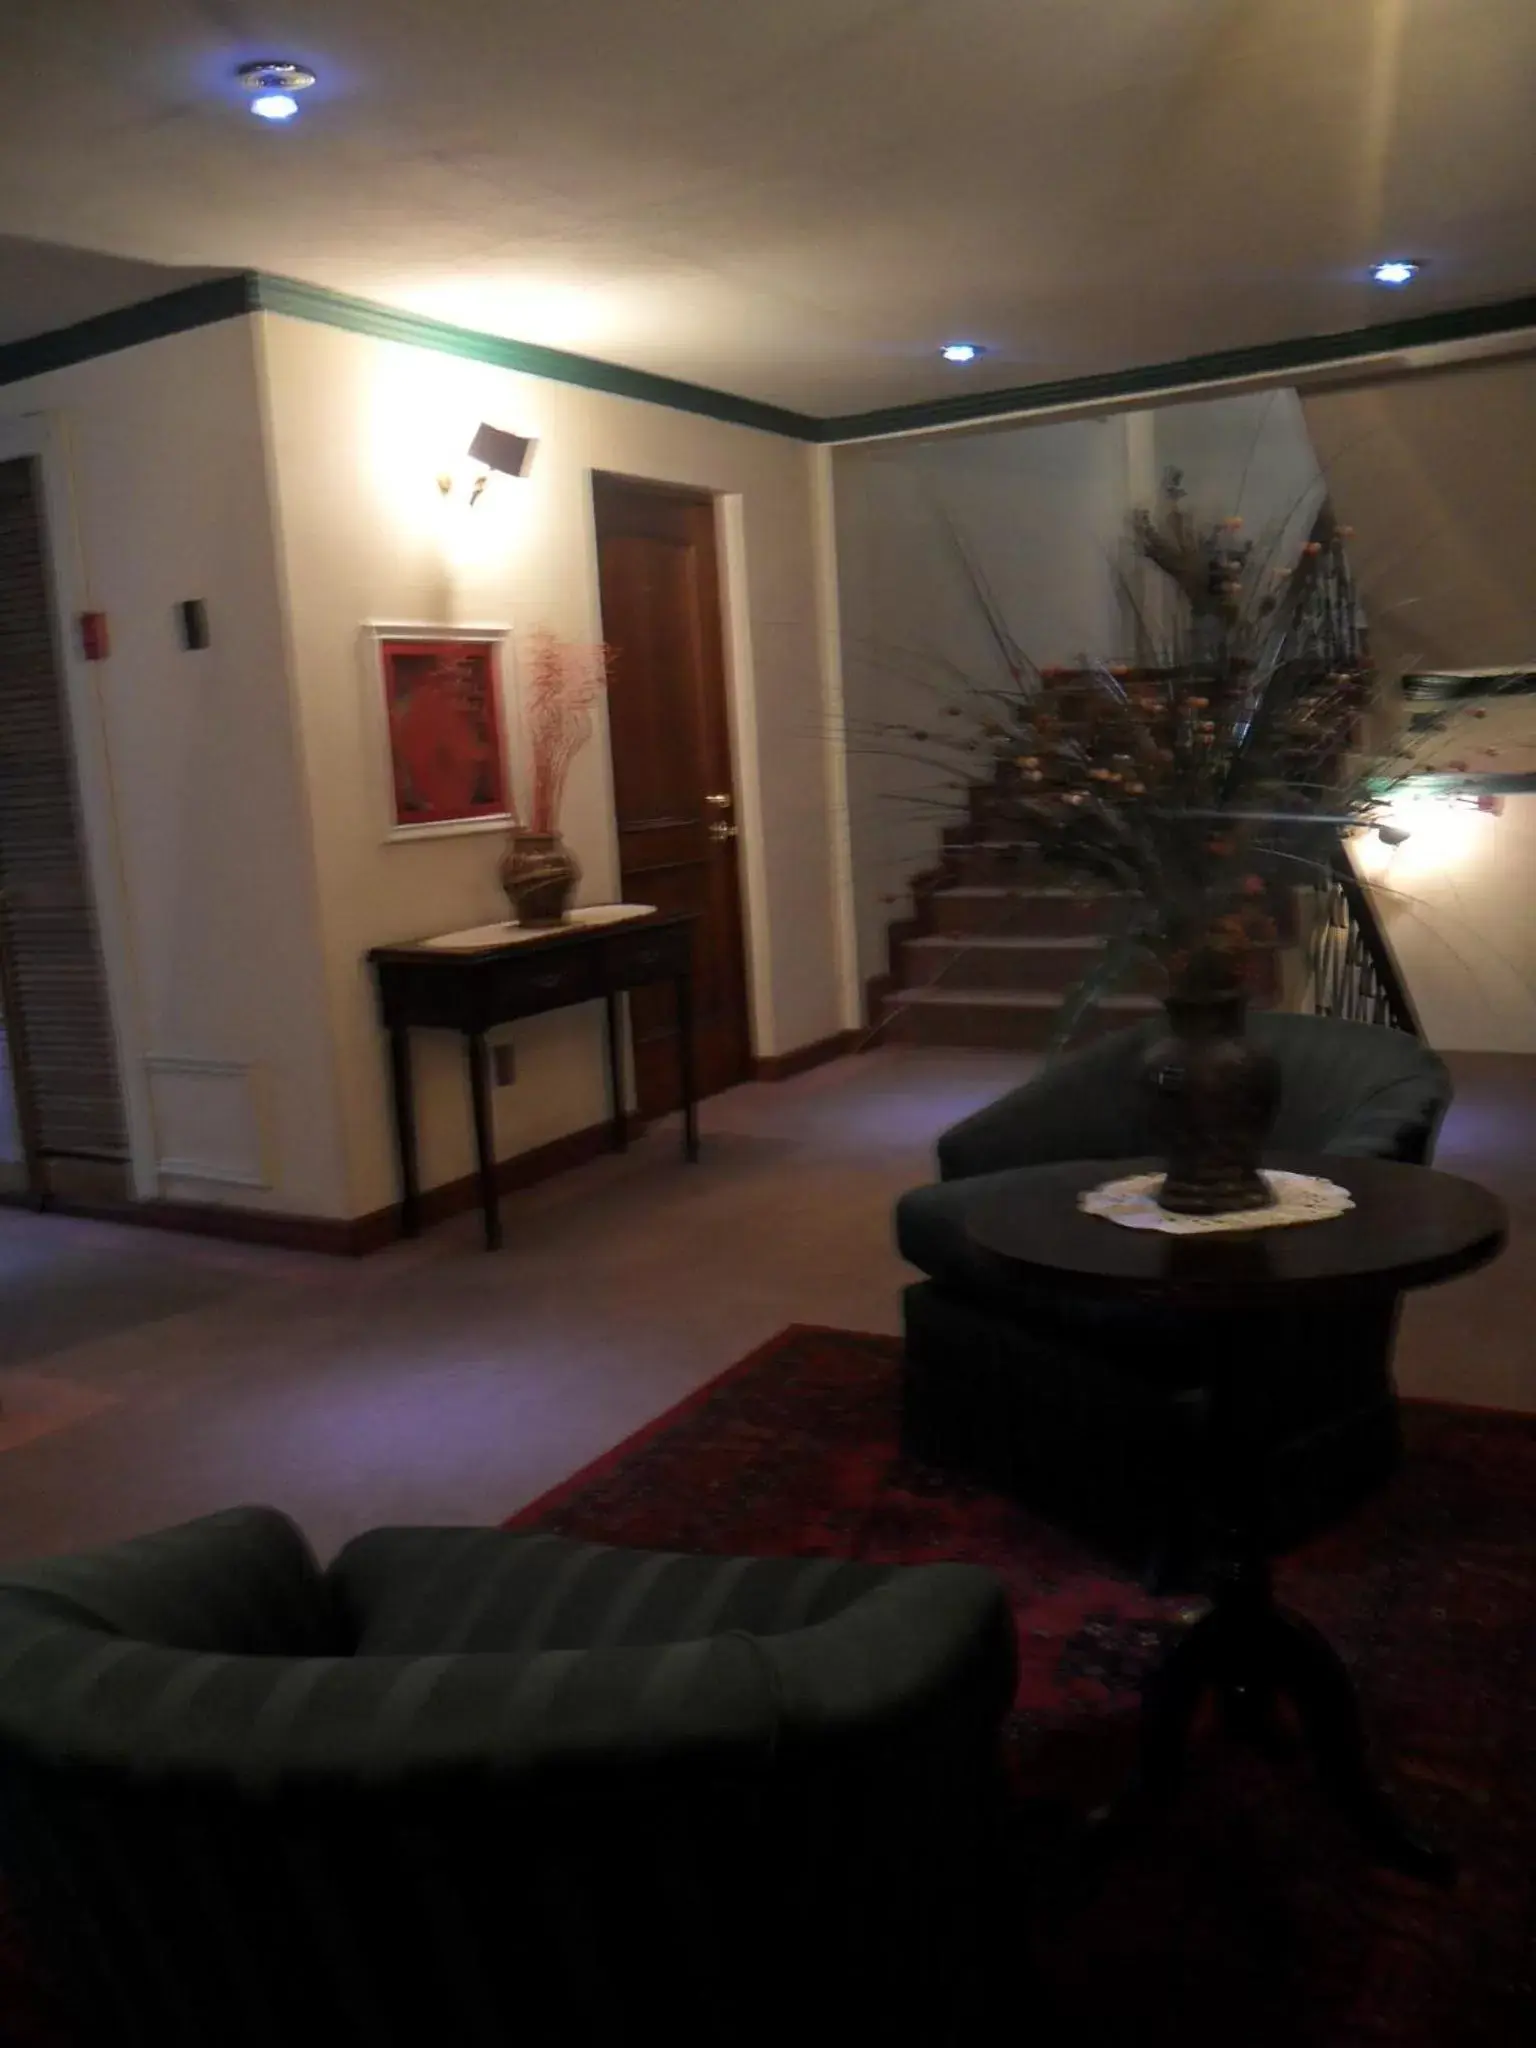 Lobby or reception in Hotel Isla Rey Jorge